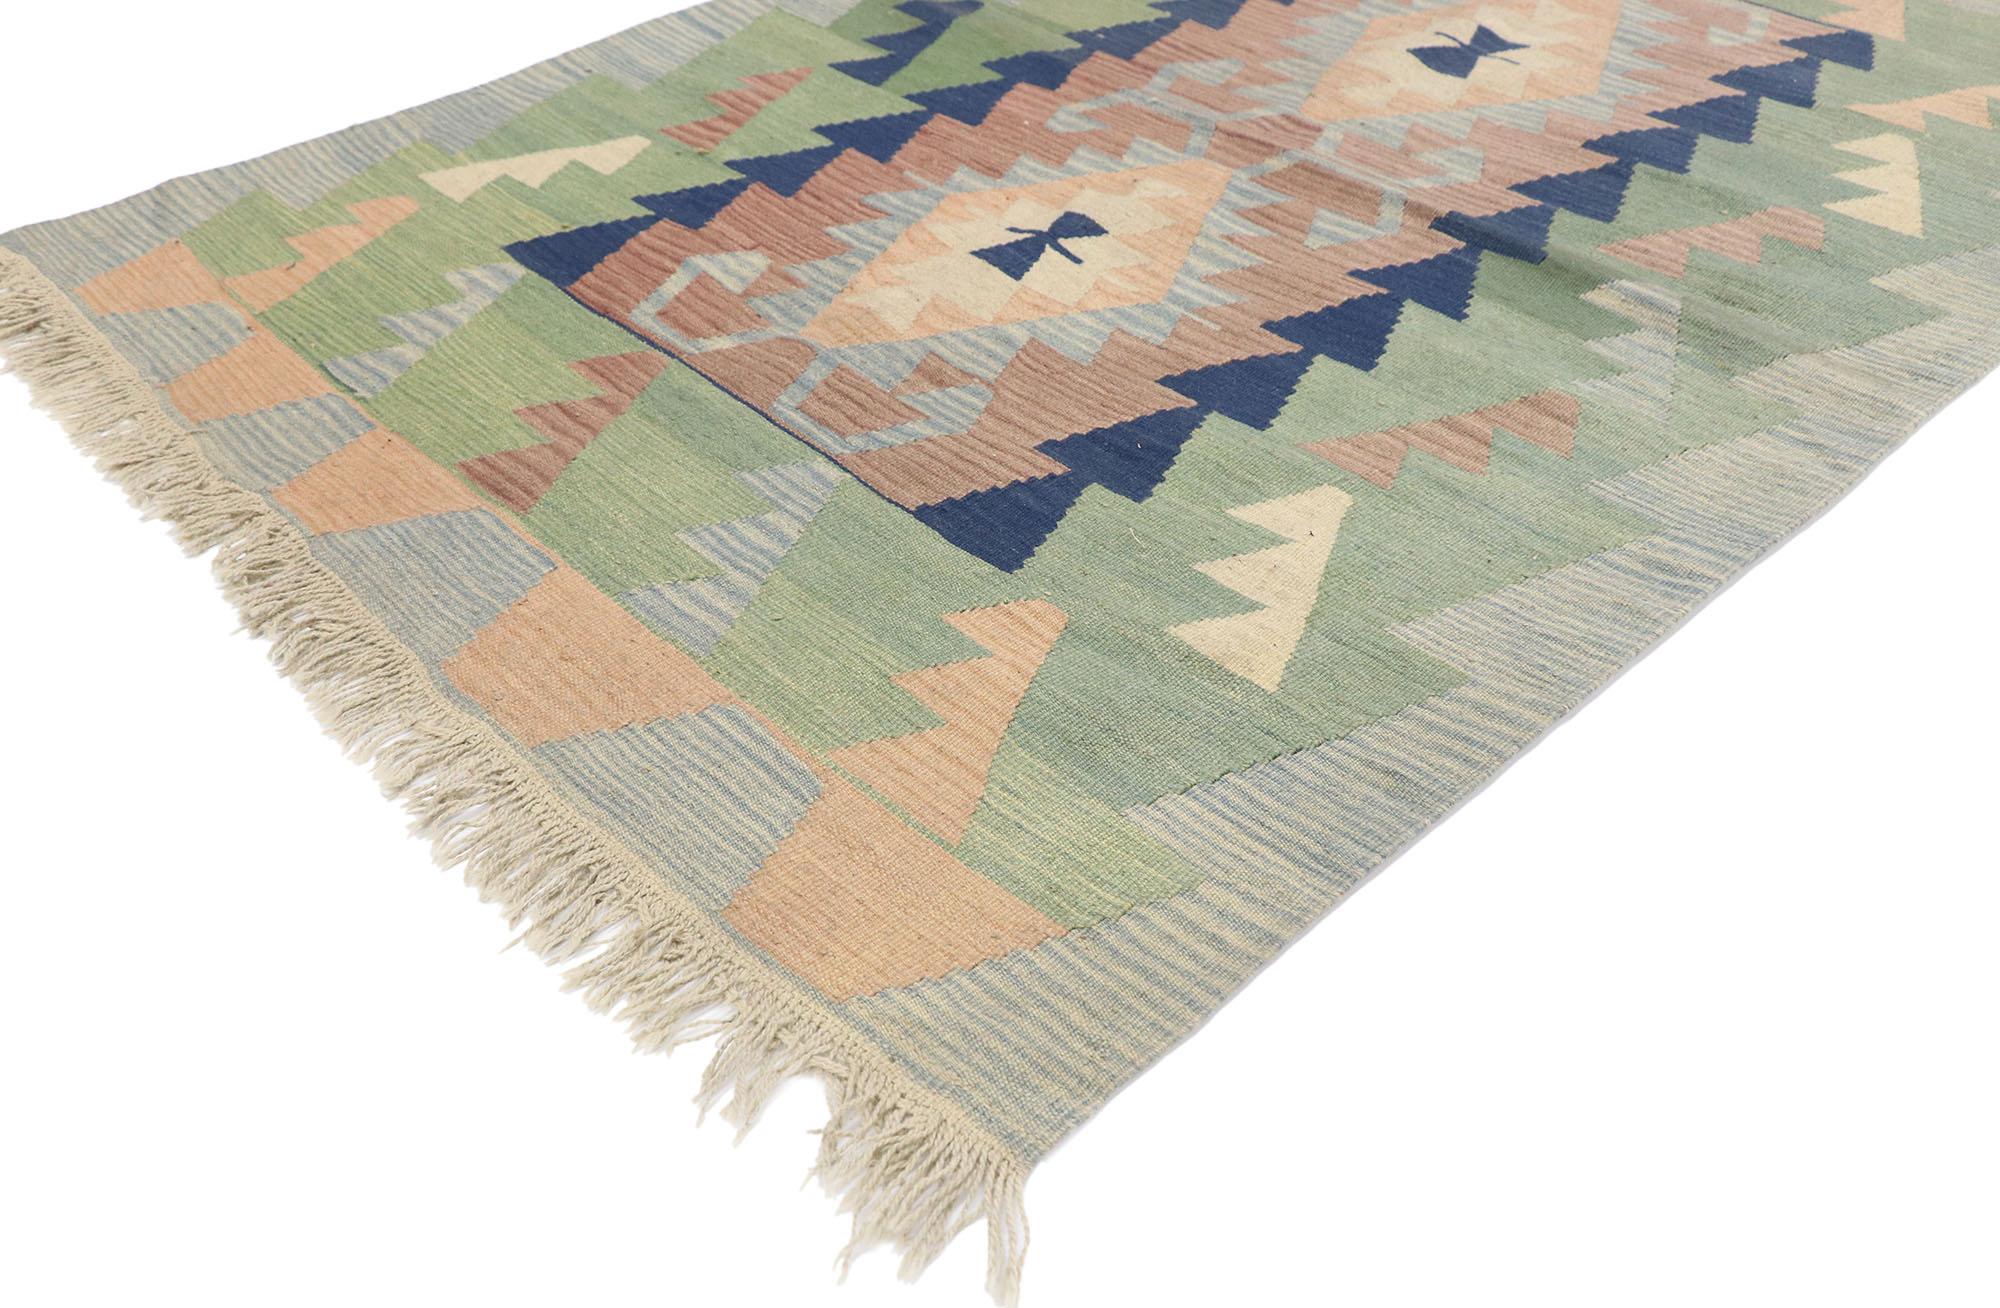 77806 Vintage Persisch Shiraz Kilim Teppich mit Boho Chic Tribal Stil 03'11 x 05'07. Voller winziger Details und einem kühnen, ausdrucksstarken Design, kombiniert mit leuchtenden Farben und Tribal-Stil, ist dieser handgewebte persische